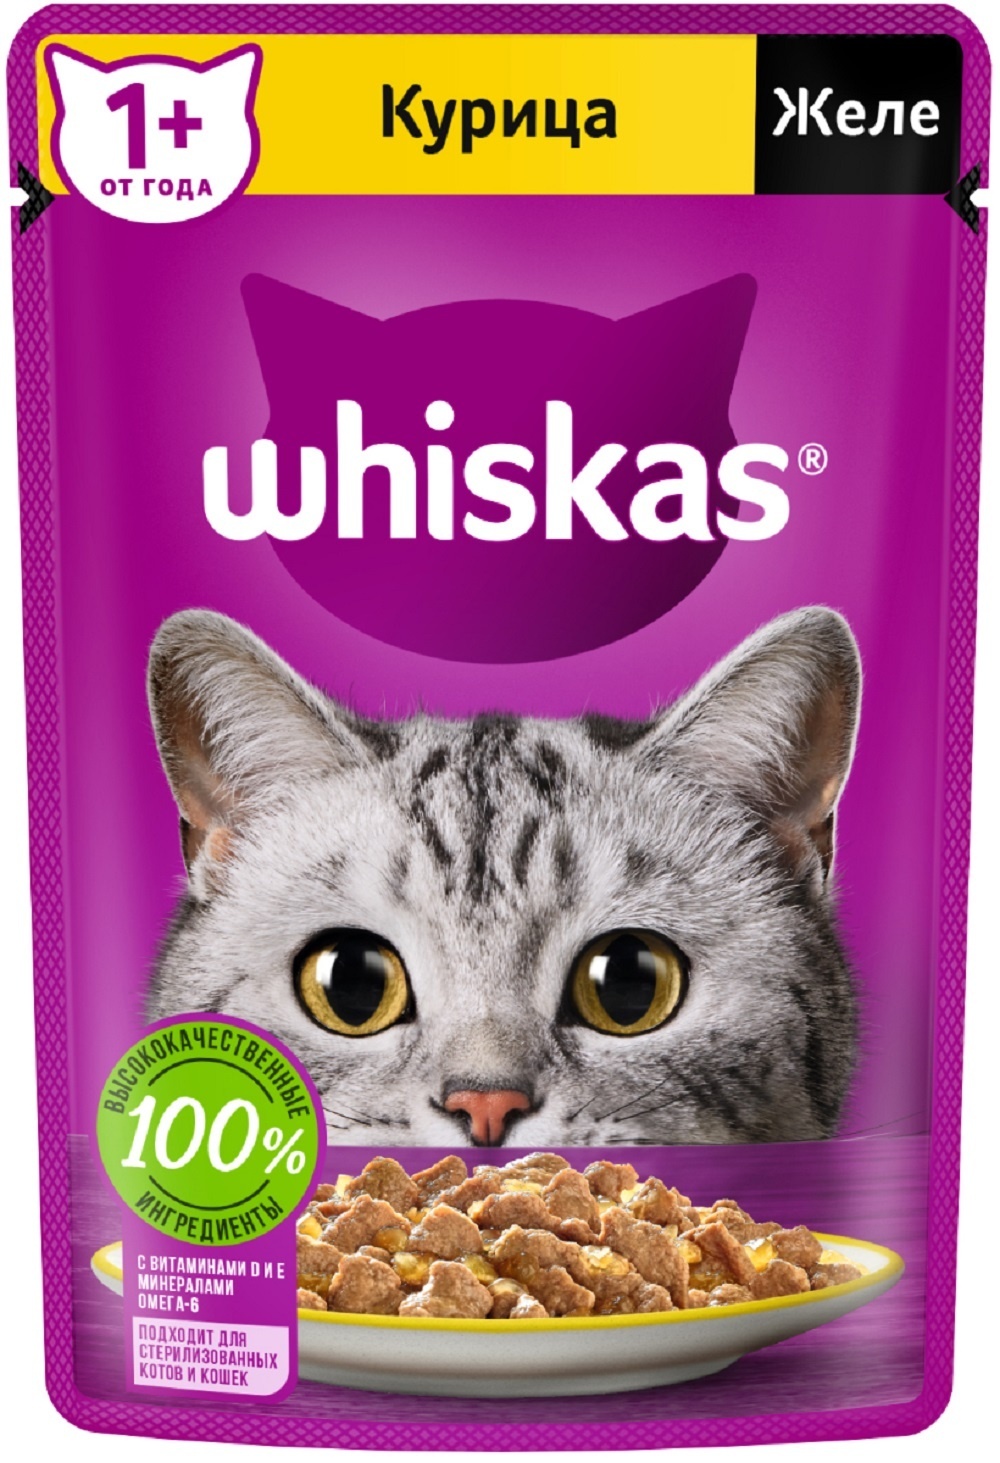 Whiskas Whiskas влажный корм для кошек желе, с курицей (75 г) для иммунитета классический 2 шт по 500 г